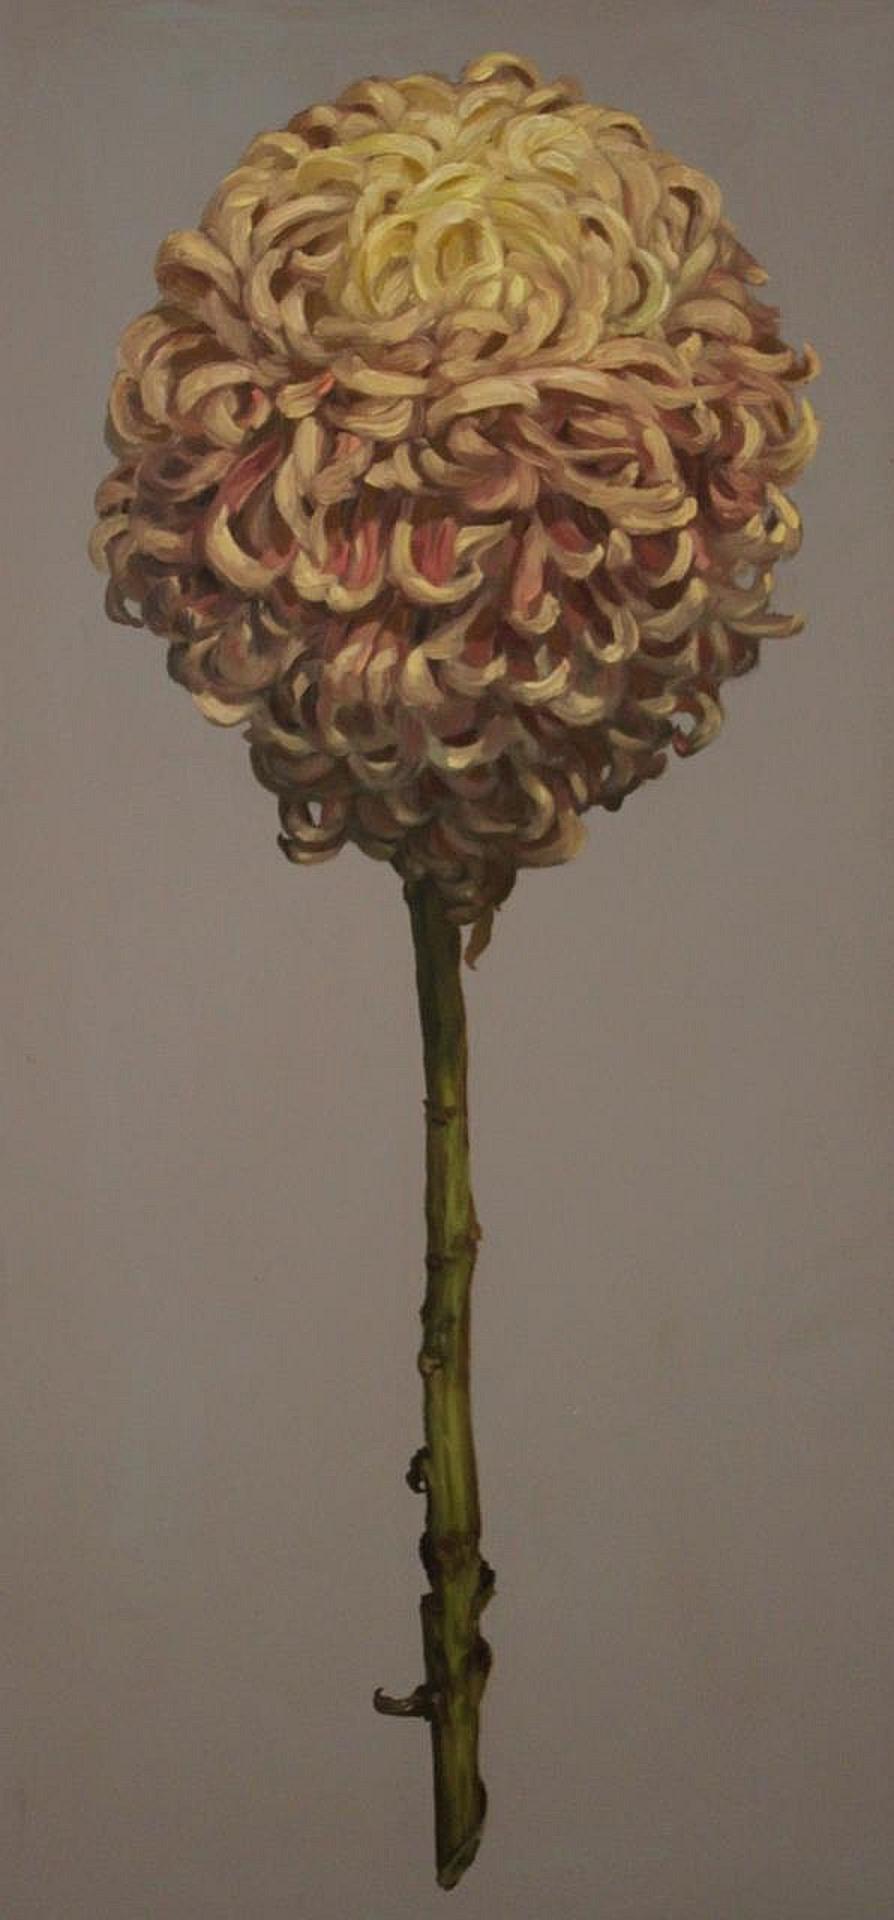 Ben Reeves (1969) - Chrysanthemum